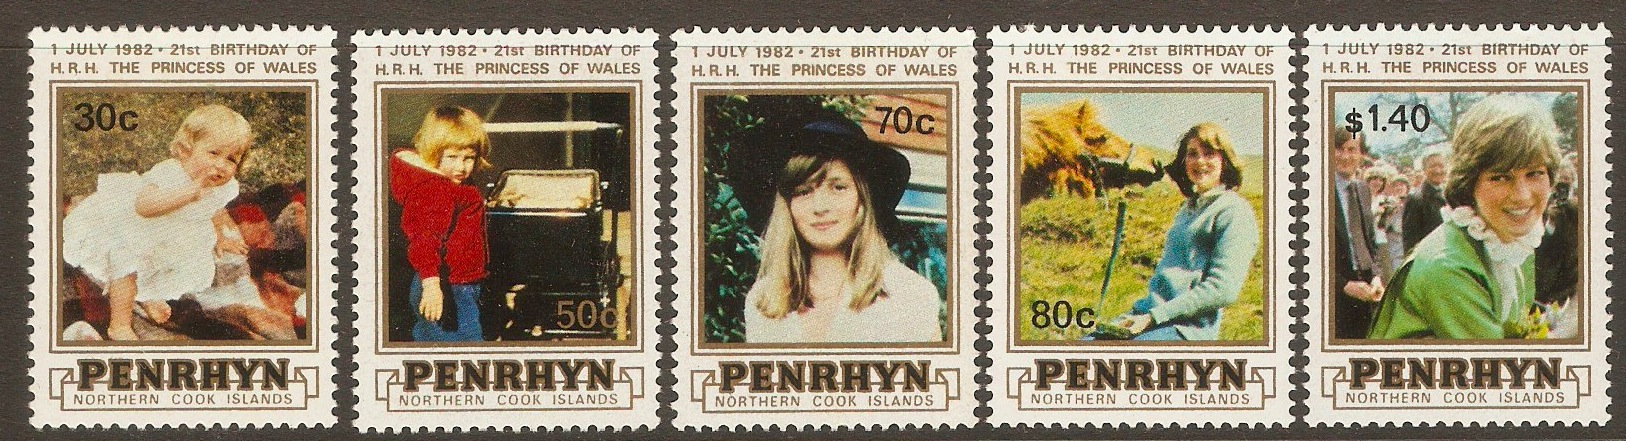 Penrhyn Island 1982 Princess of Wales Birthday set. SG250-SG254.